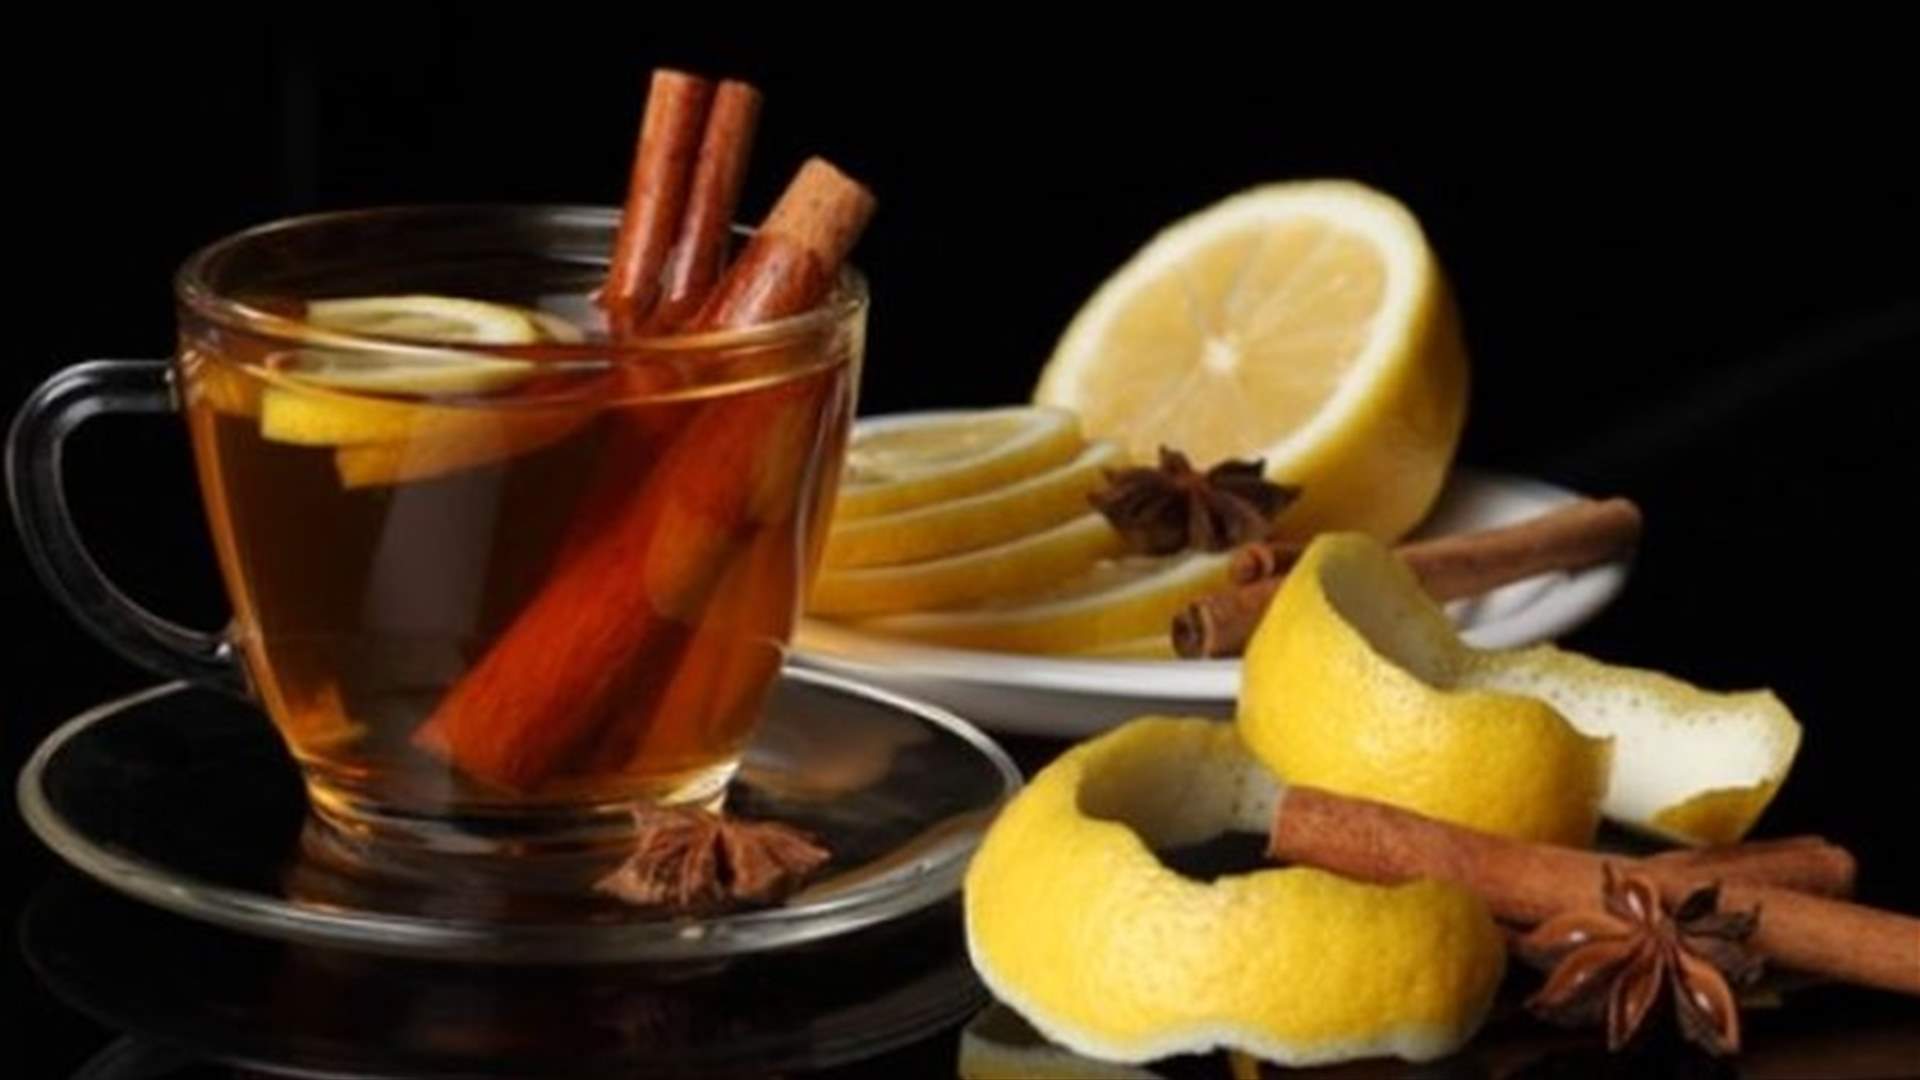 مشروب العسل والقرفة الليمون... وصفة لذيذة ومميزة!